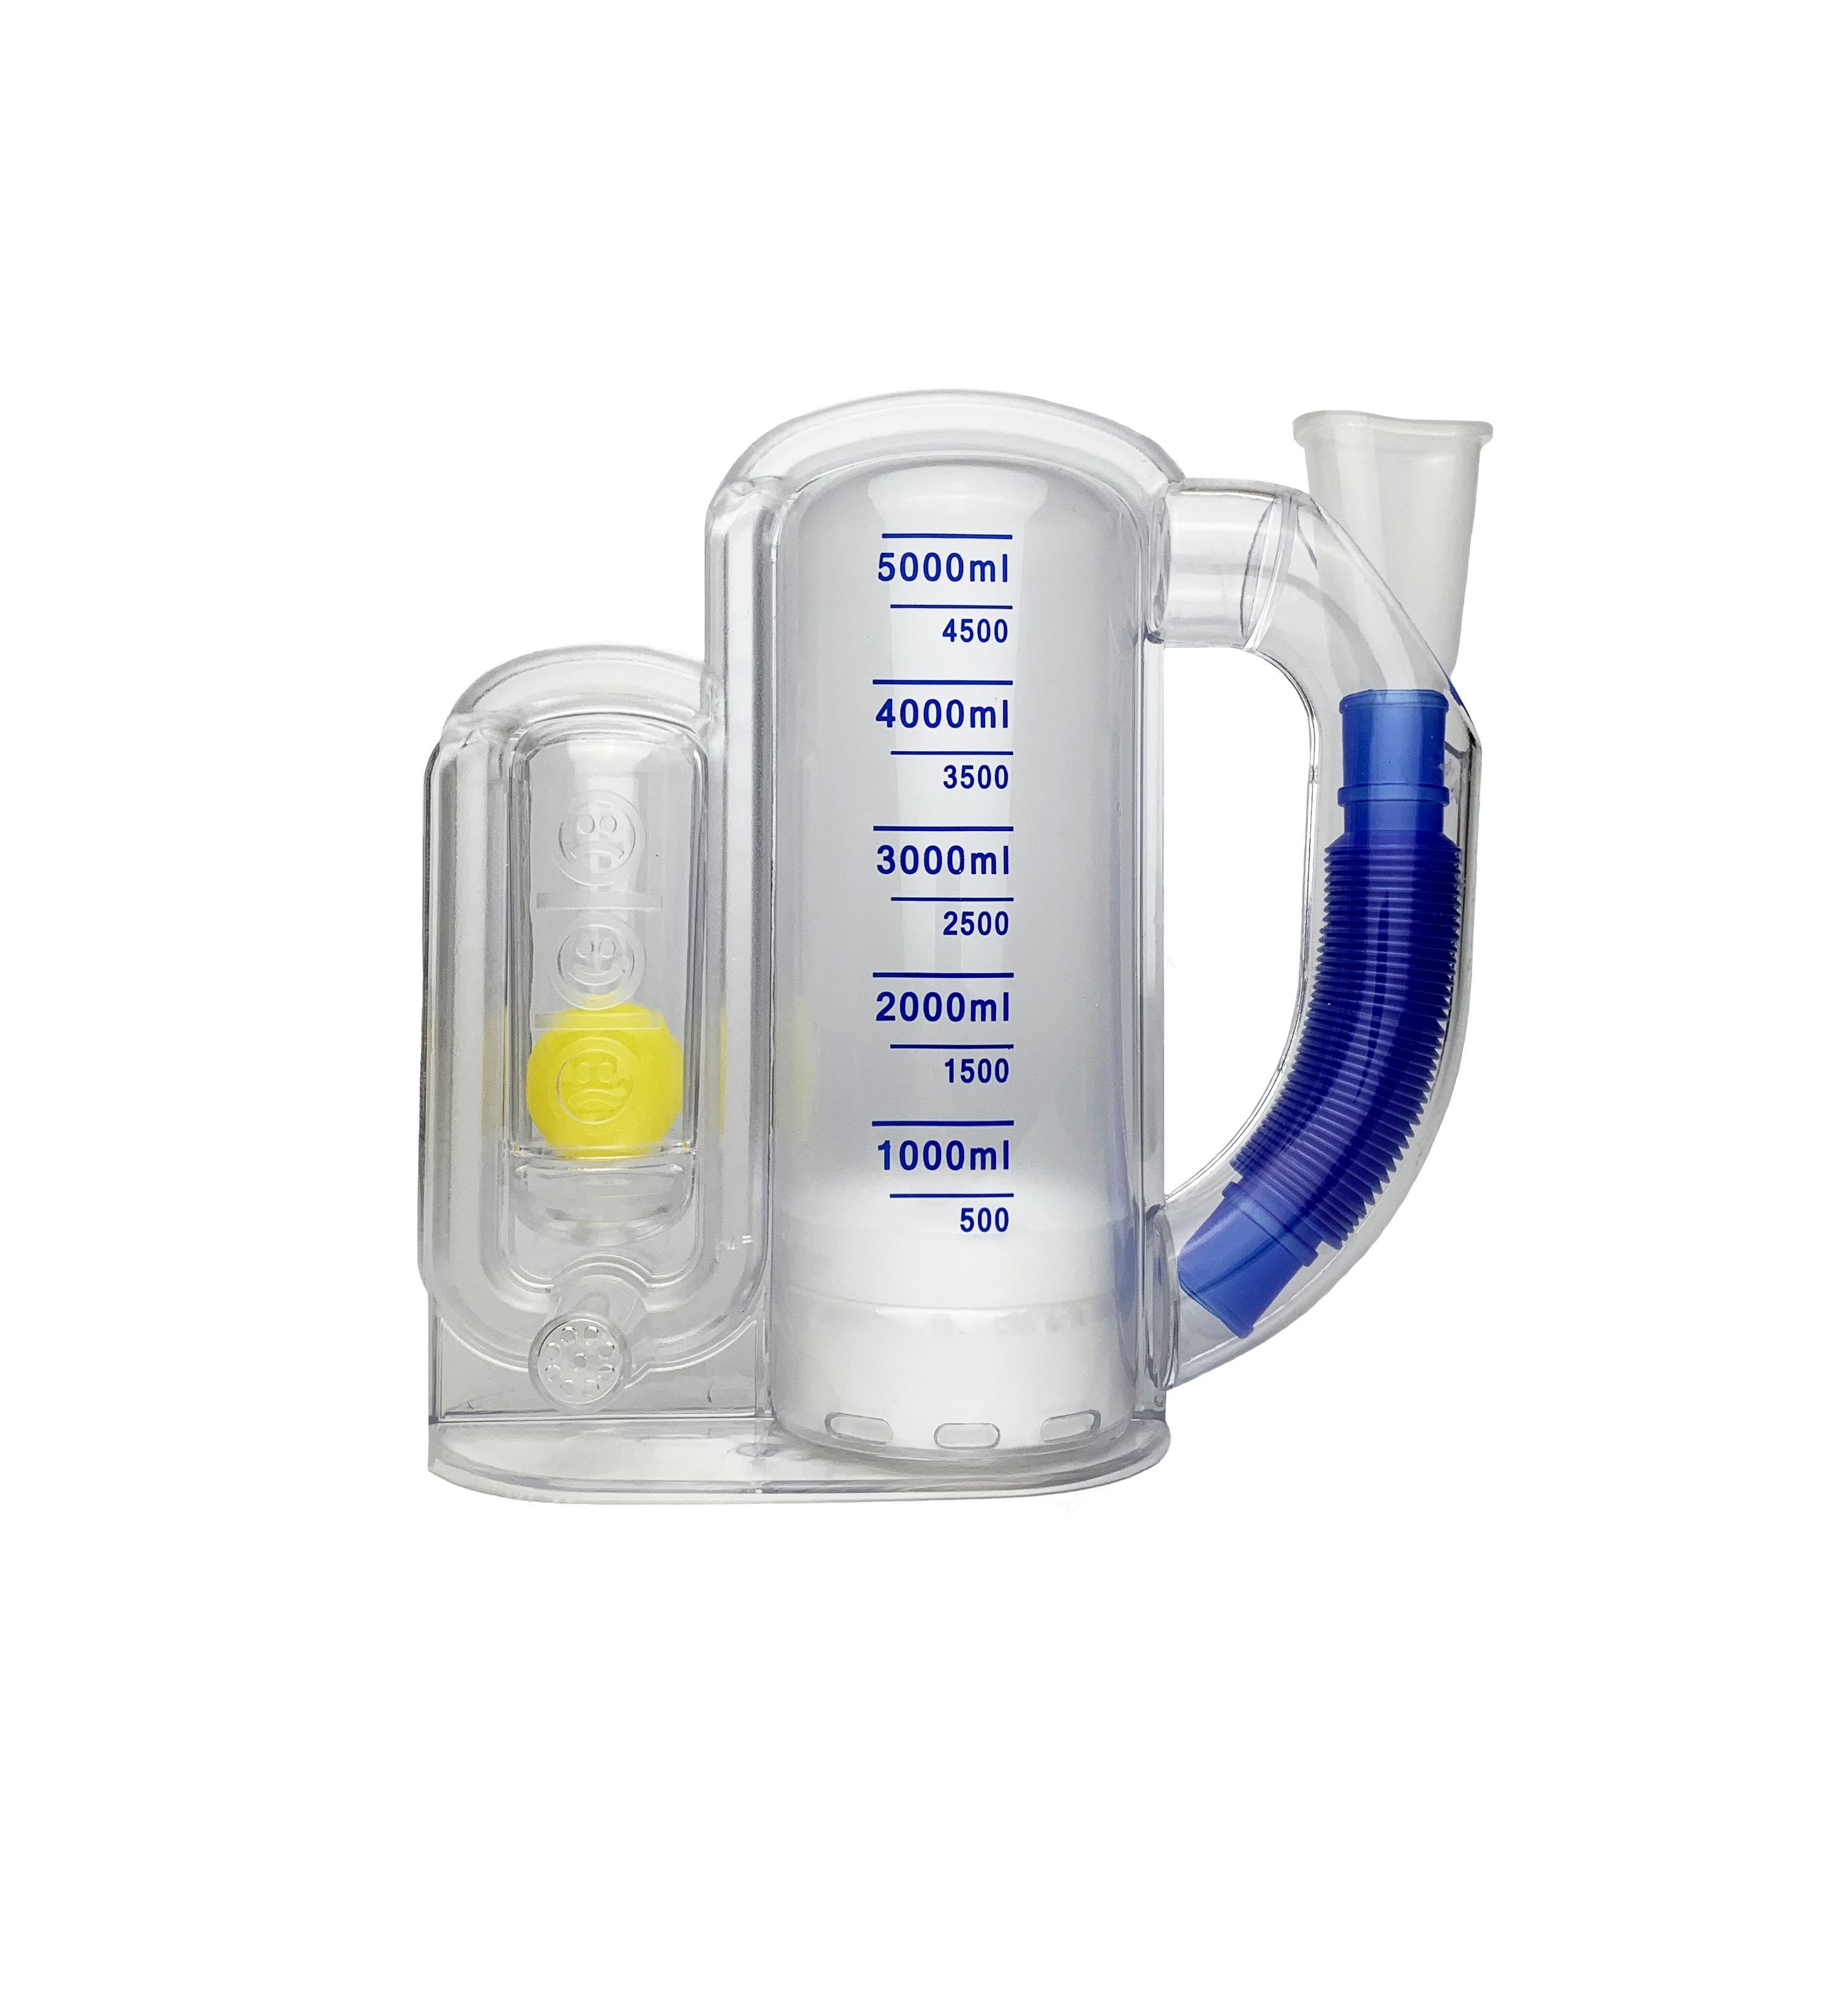 呼吸训练器产品生产厂家_呼吸训练器使用说明相关-成都新澳冠医疗器械公司